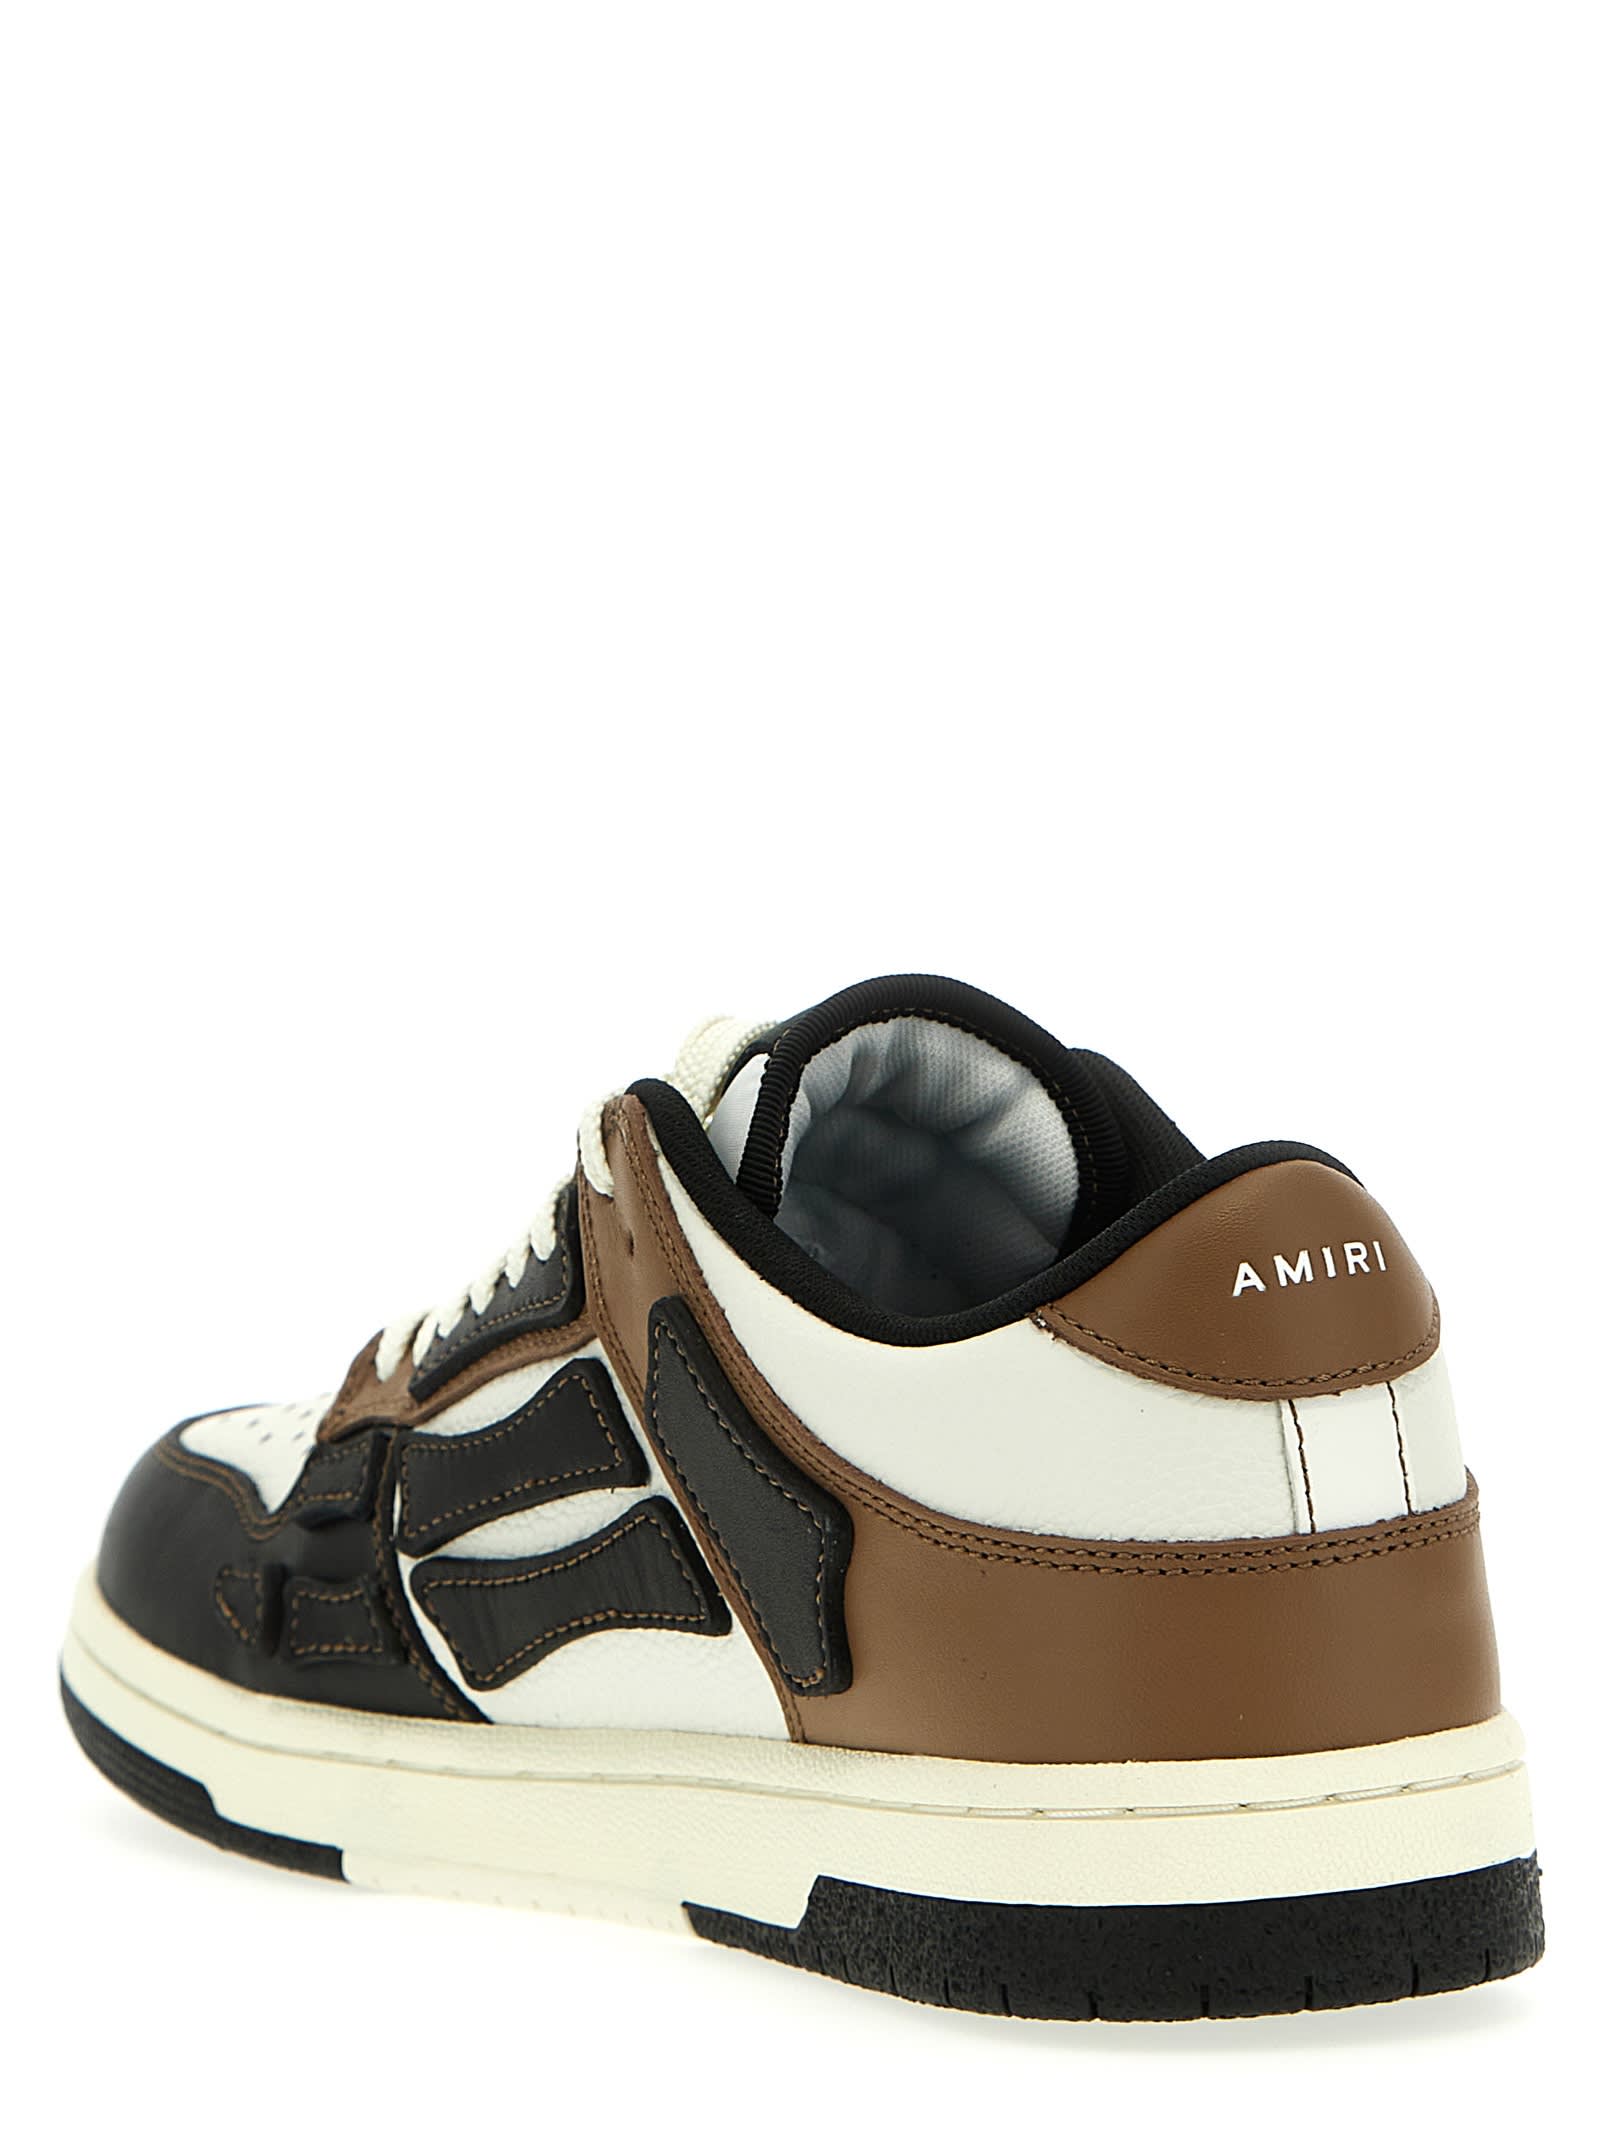 Shop Amiri Skel Sneakers